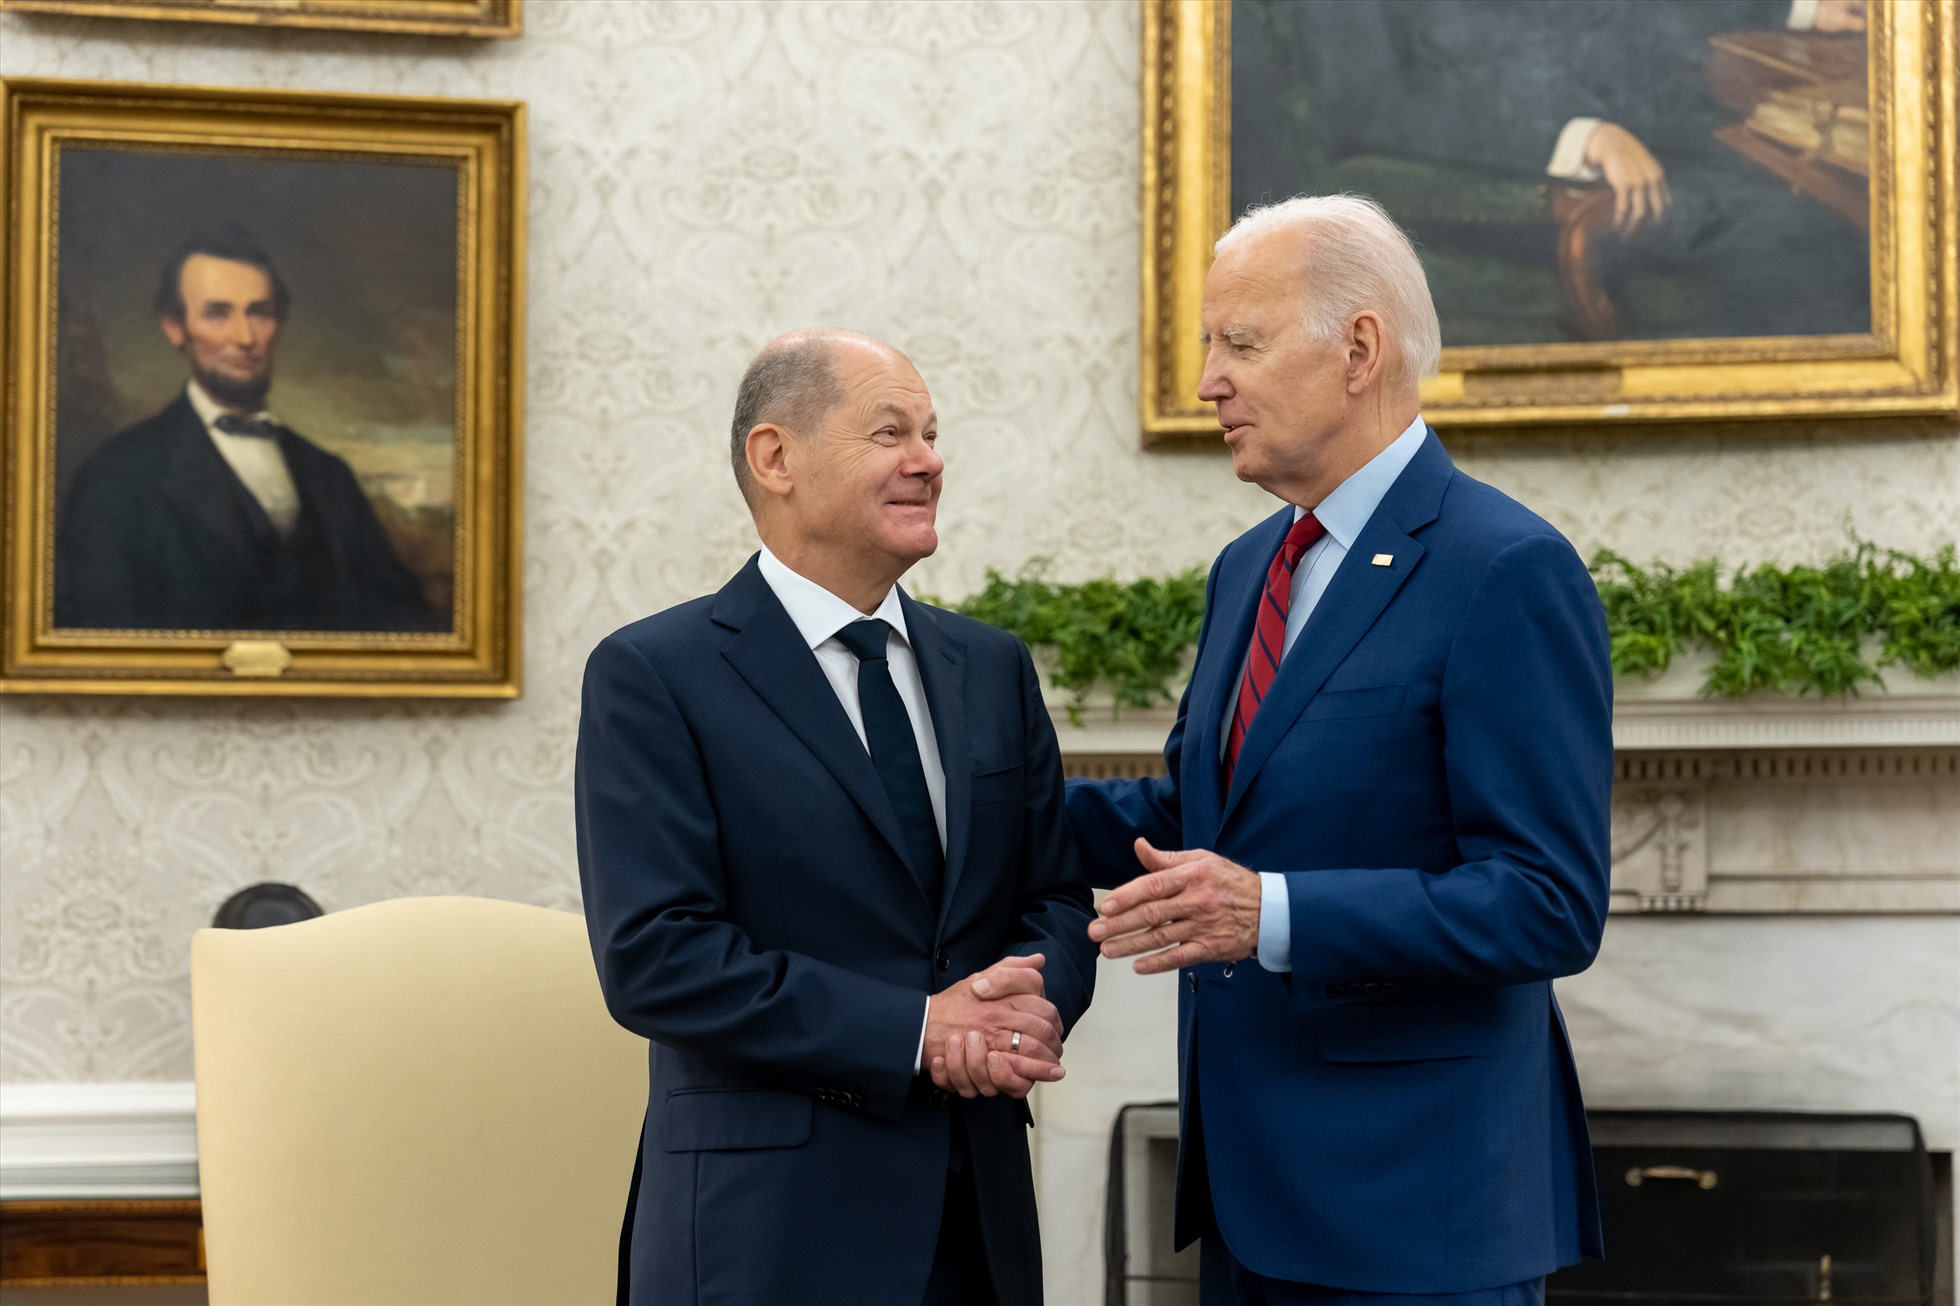 Viện trợ của Đức cho Ukraina cũng là nội dung được trao đổi khi Tổng thống Mỹ Joe Biden và Thủ tướng Đức Olaf Scholz gặp nhau tại Nhà Trắng ngày 3.3. Ảnh: Twitter Tổng thống Mỹ